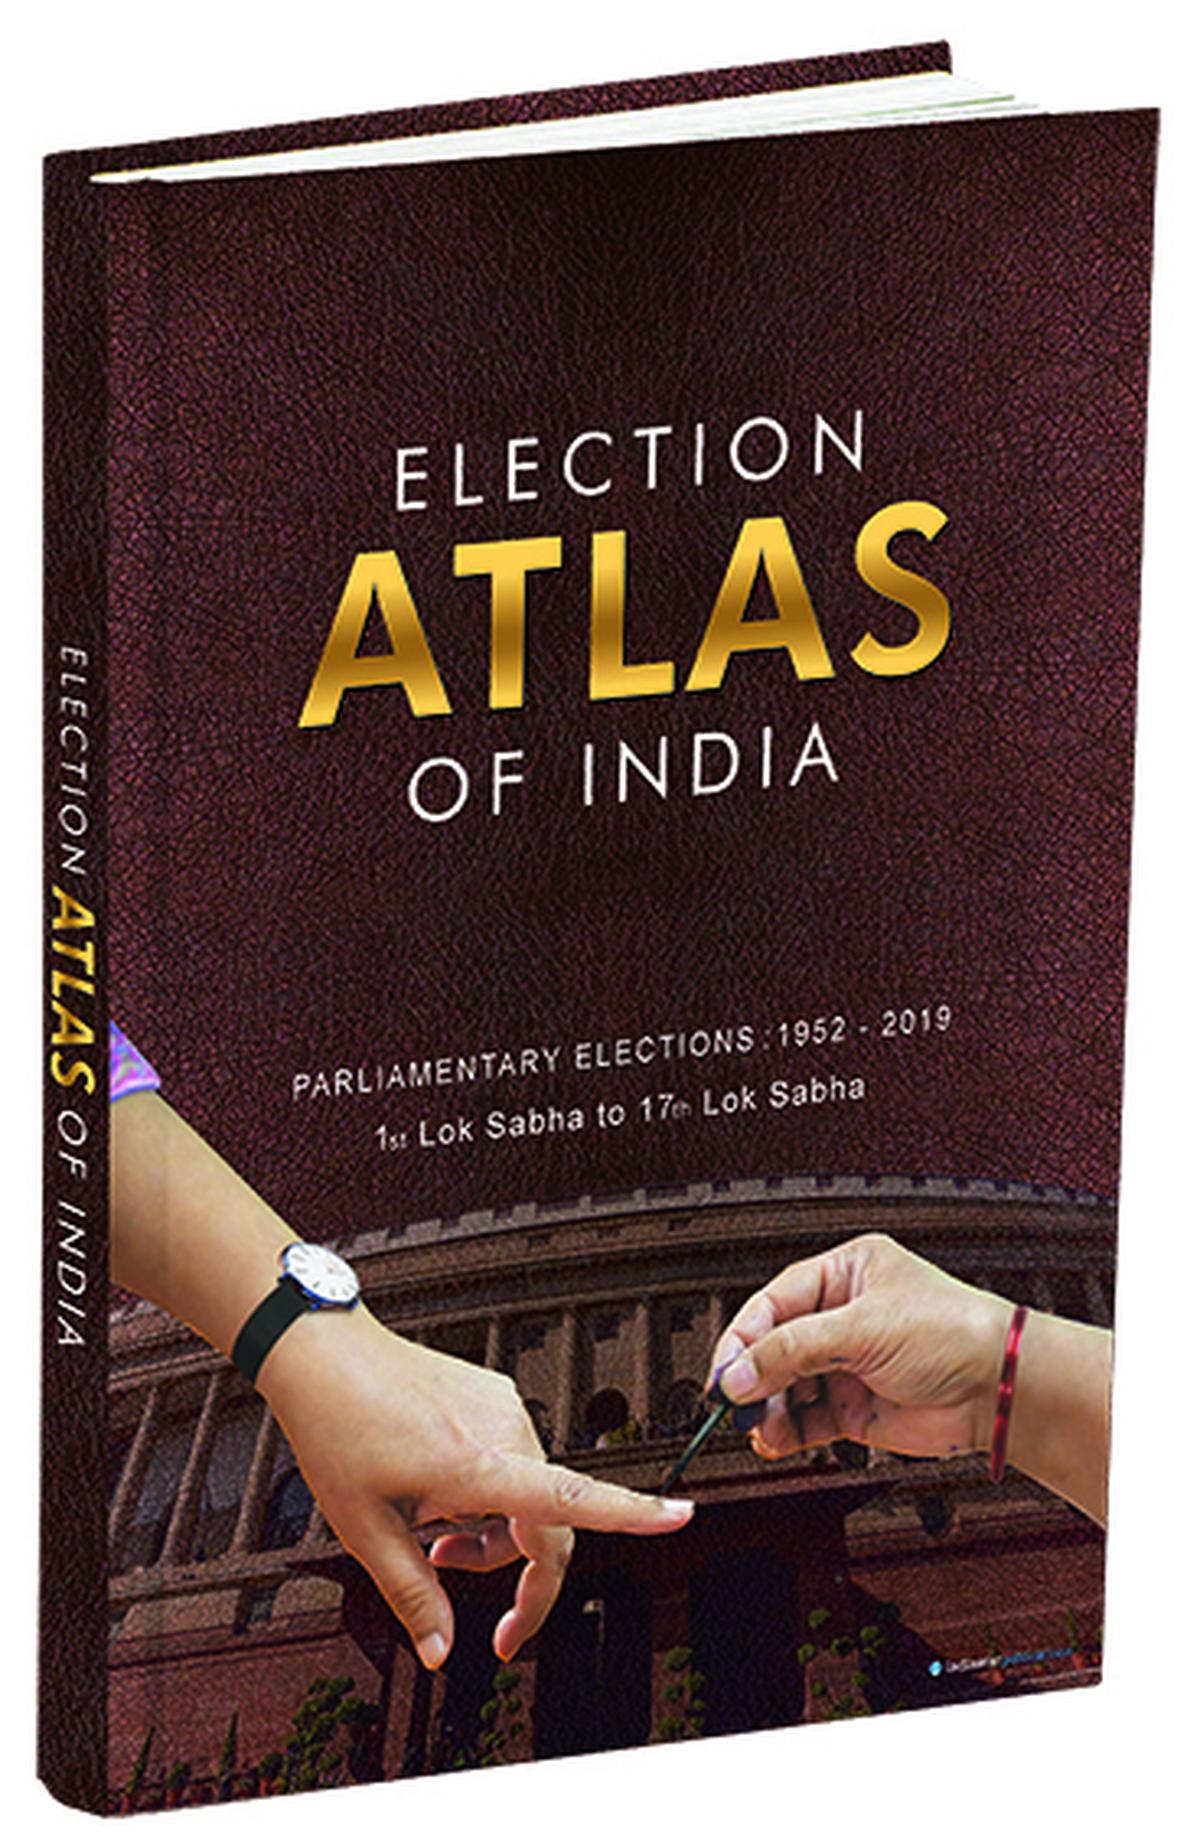 De 'Election Atlas of India' heeft meer dan 500 pagina's met informatie en kaarten